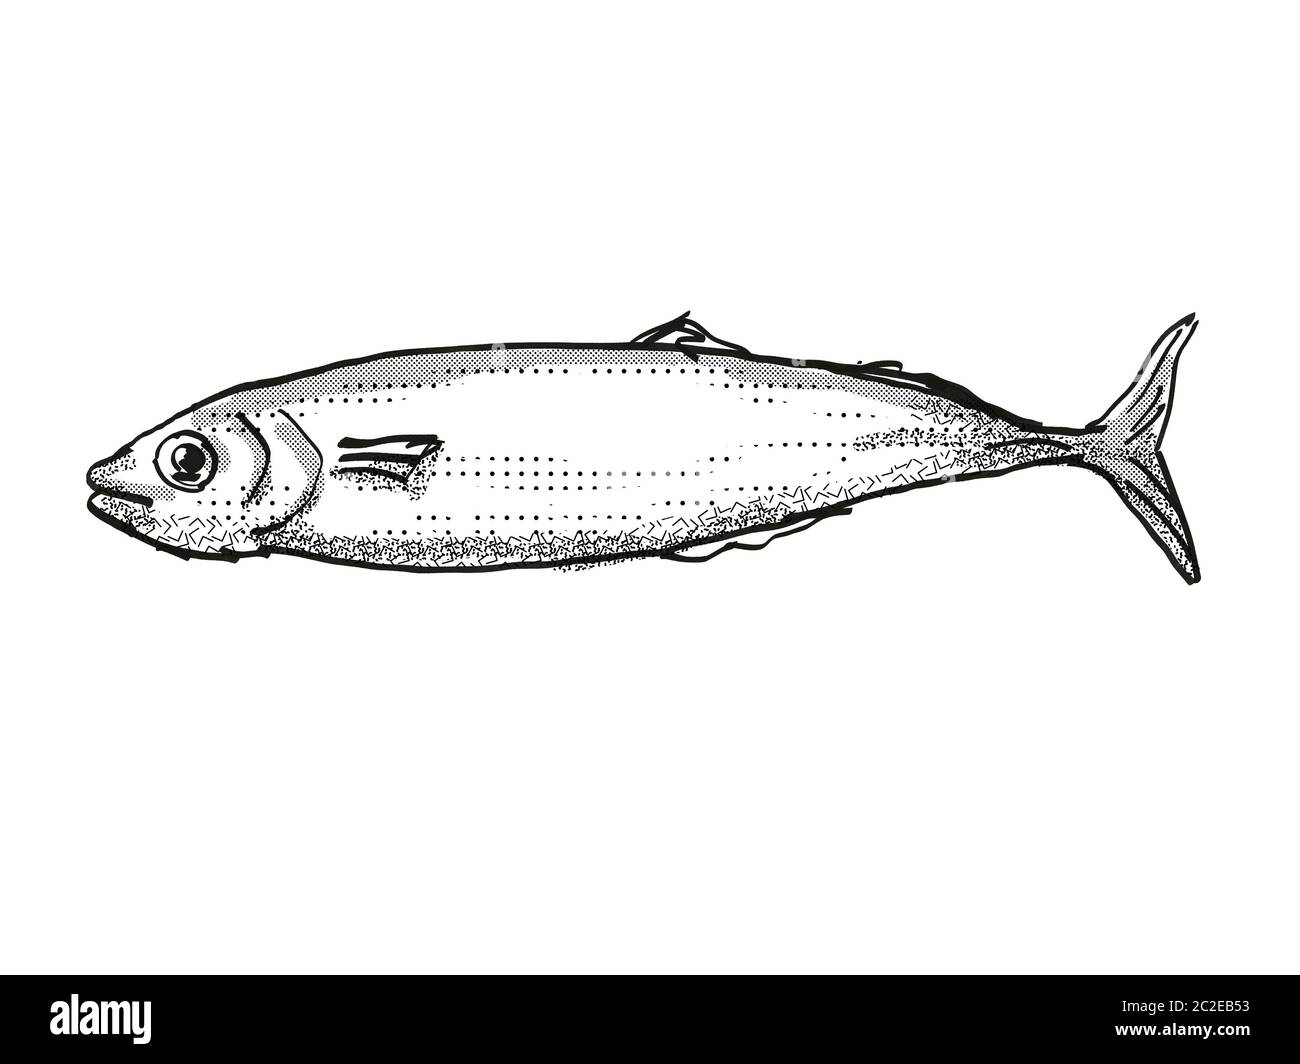 Retro cartoon style dessin d'un Koheru, originaire de la Nouvelle-Zélande la vie marine vu de côté des espèces isolées sur fond blanc en noir et whit Banque D'Images